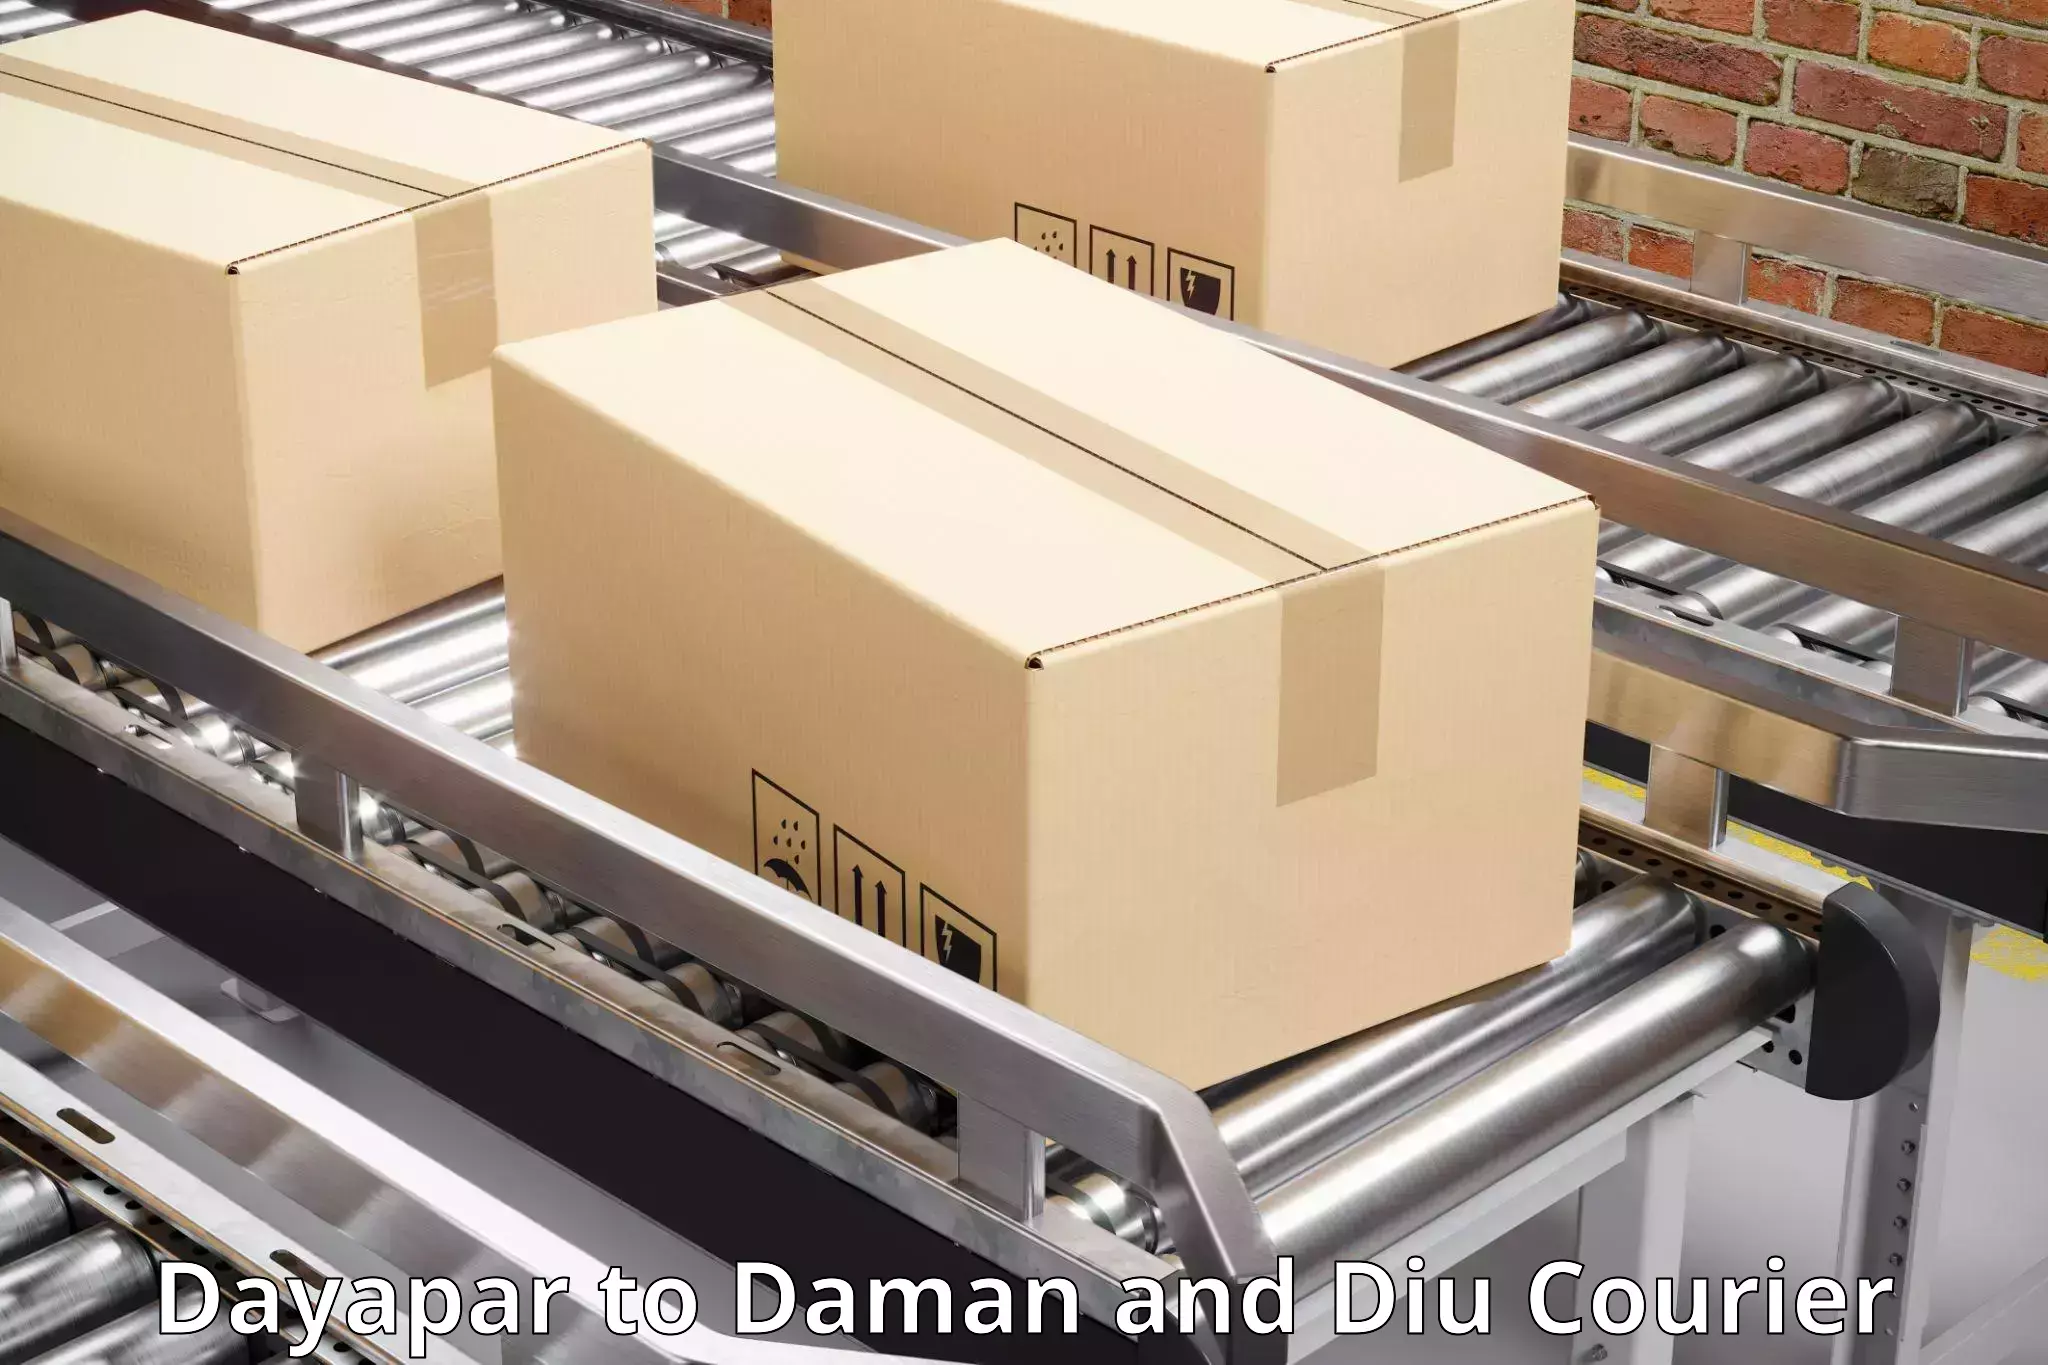 Courier service partnerships Dayapar to Daman and Diu